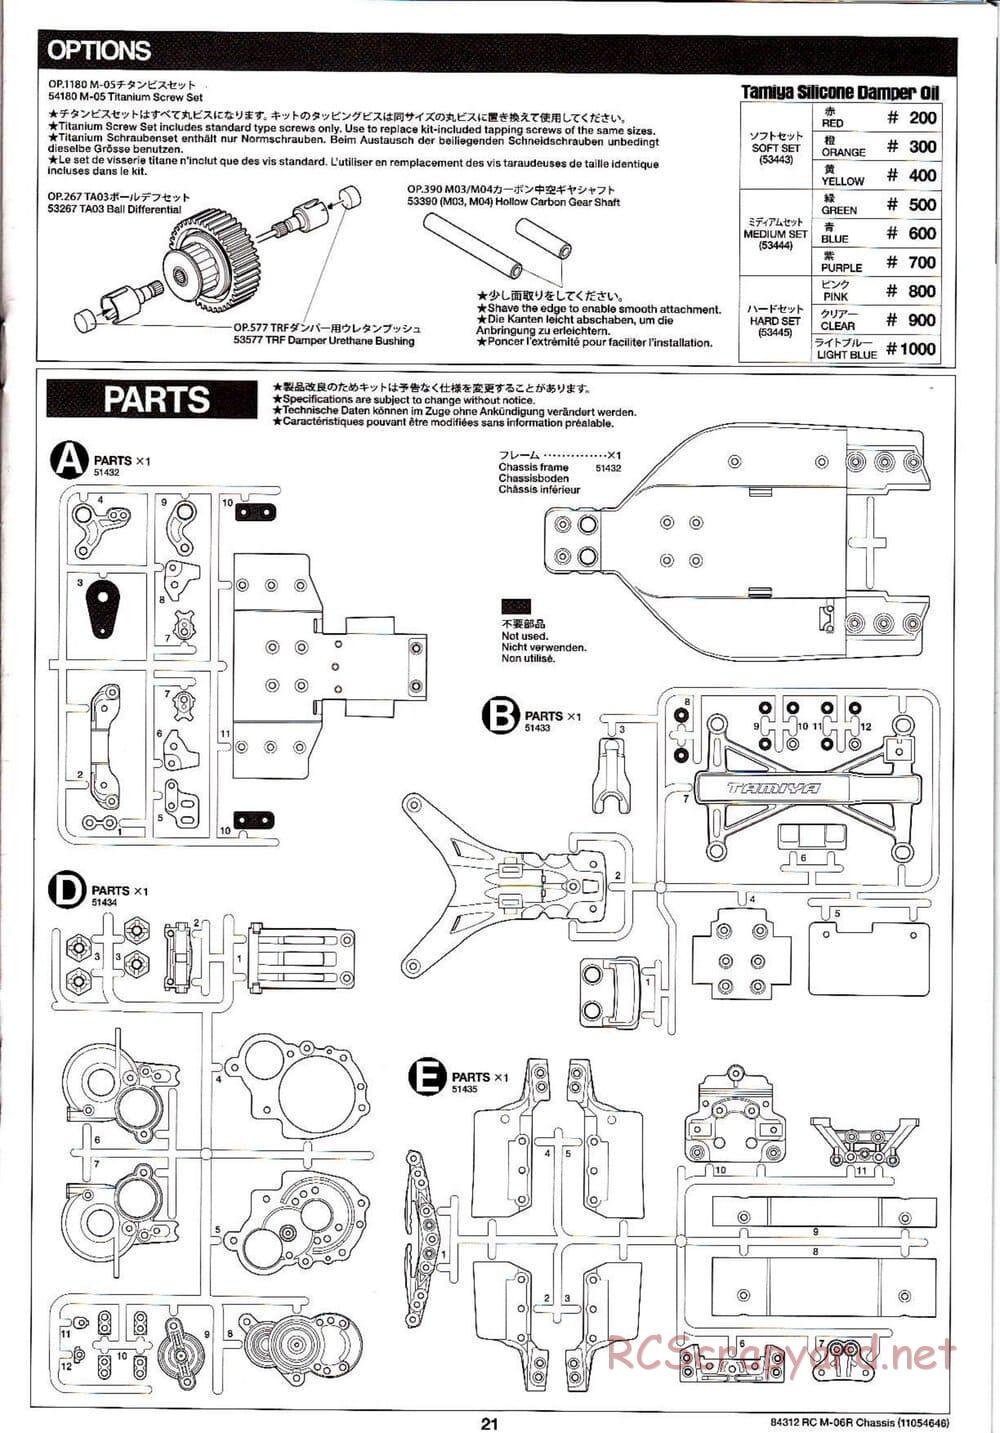 Tamiya - M-06R Chassis - Manual - Page 21